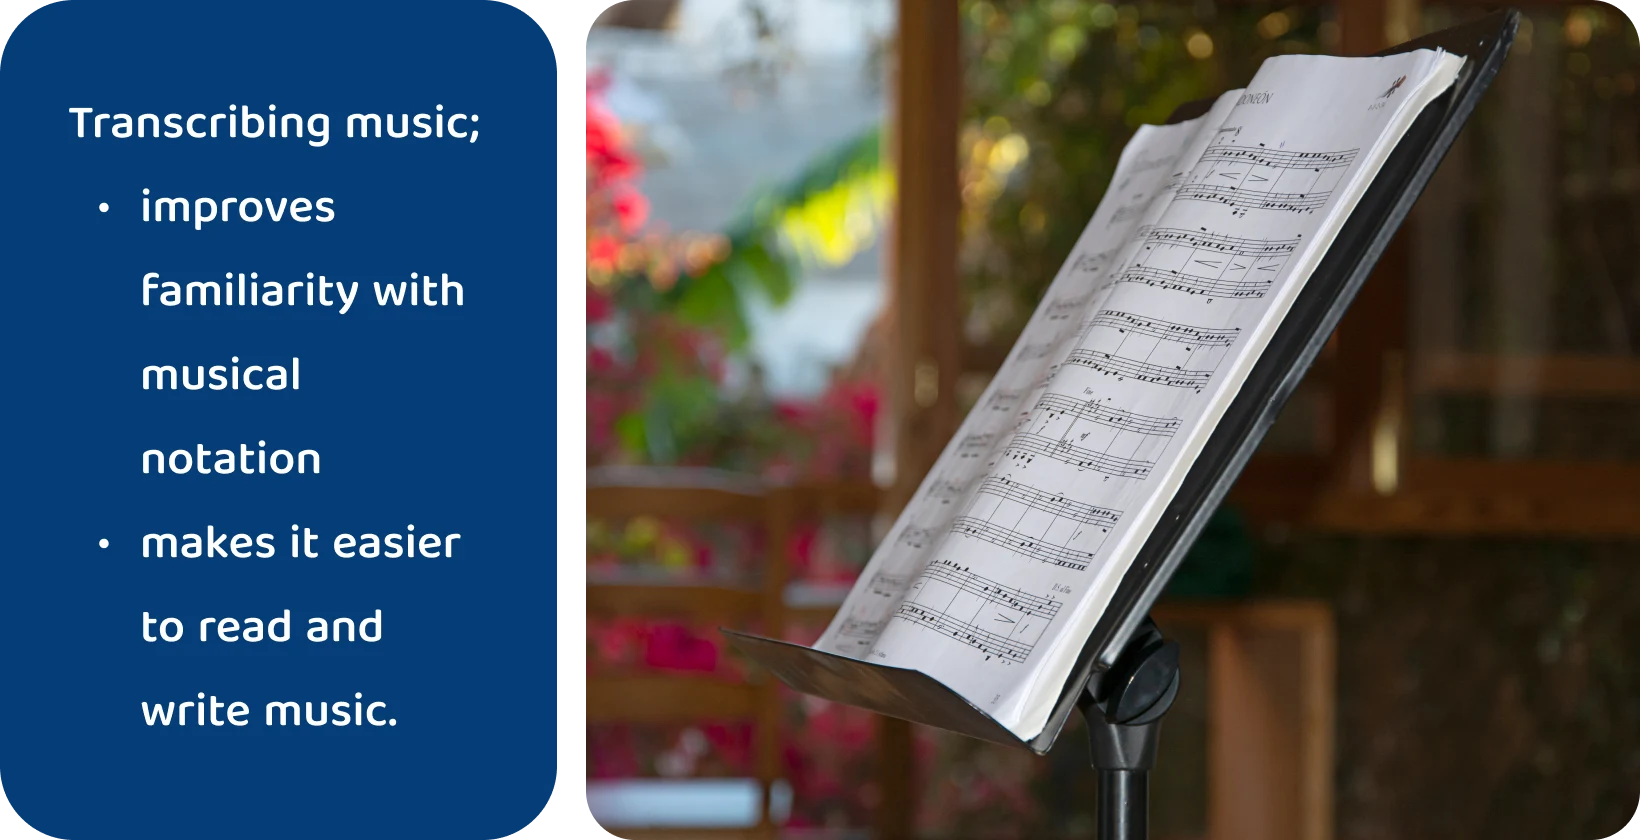 自然背景をぼかしたスタンドの楽譜は、音楽リテラシーのために音楽を書き写すことの利点を強調しています。